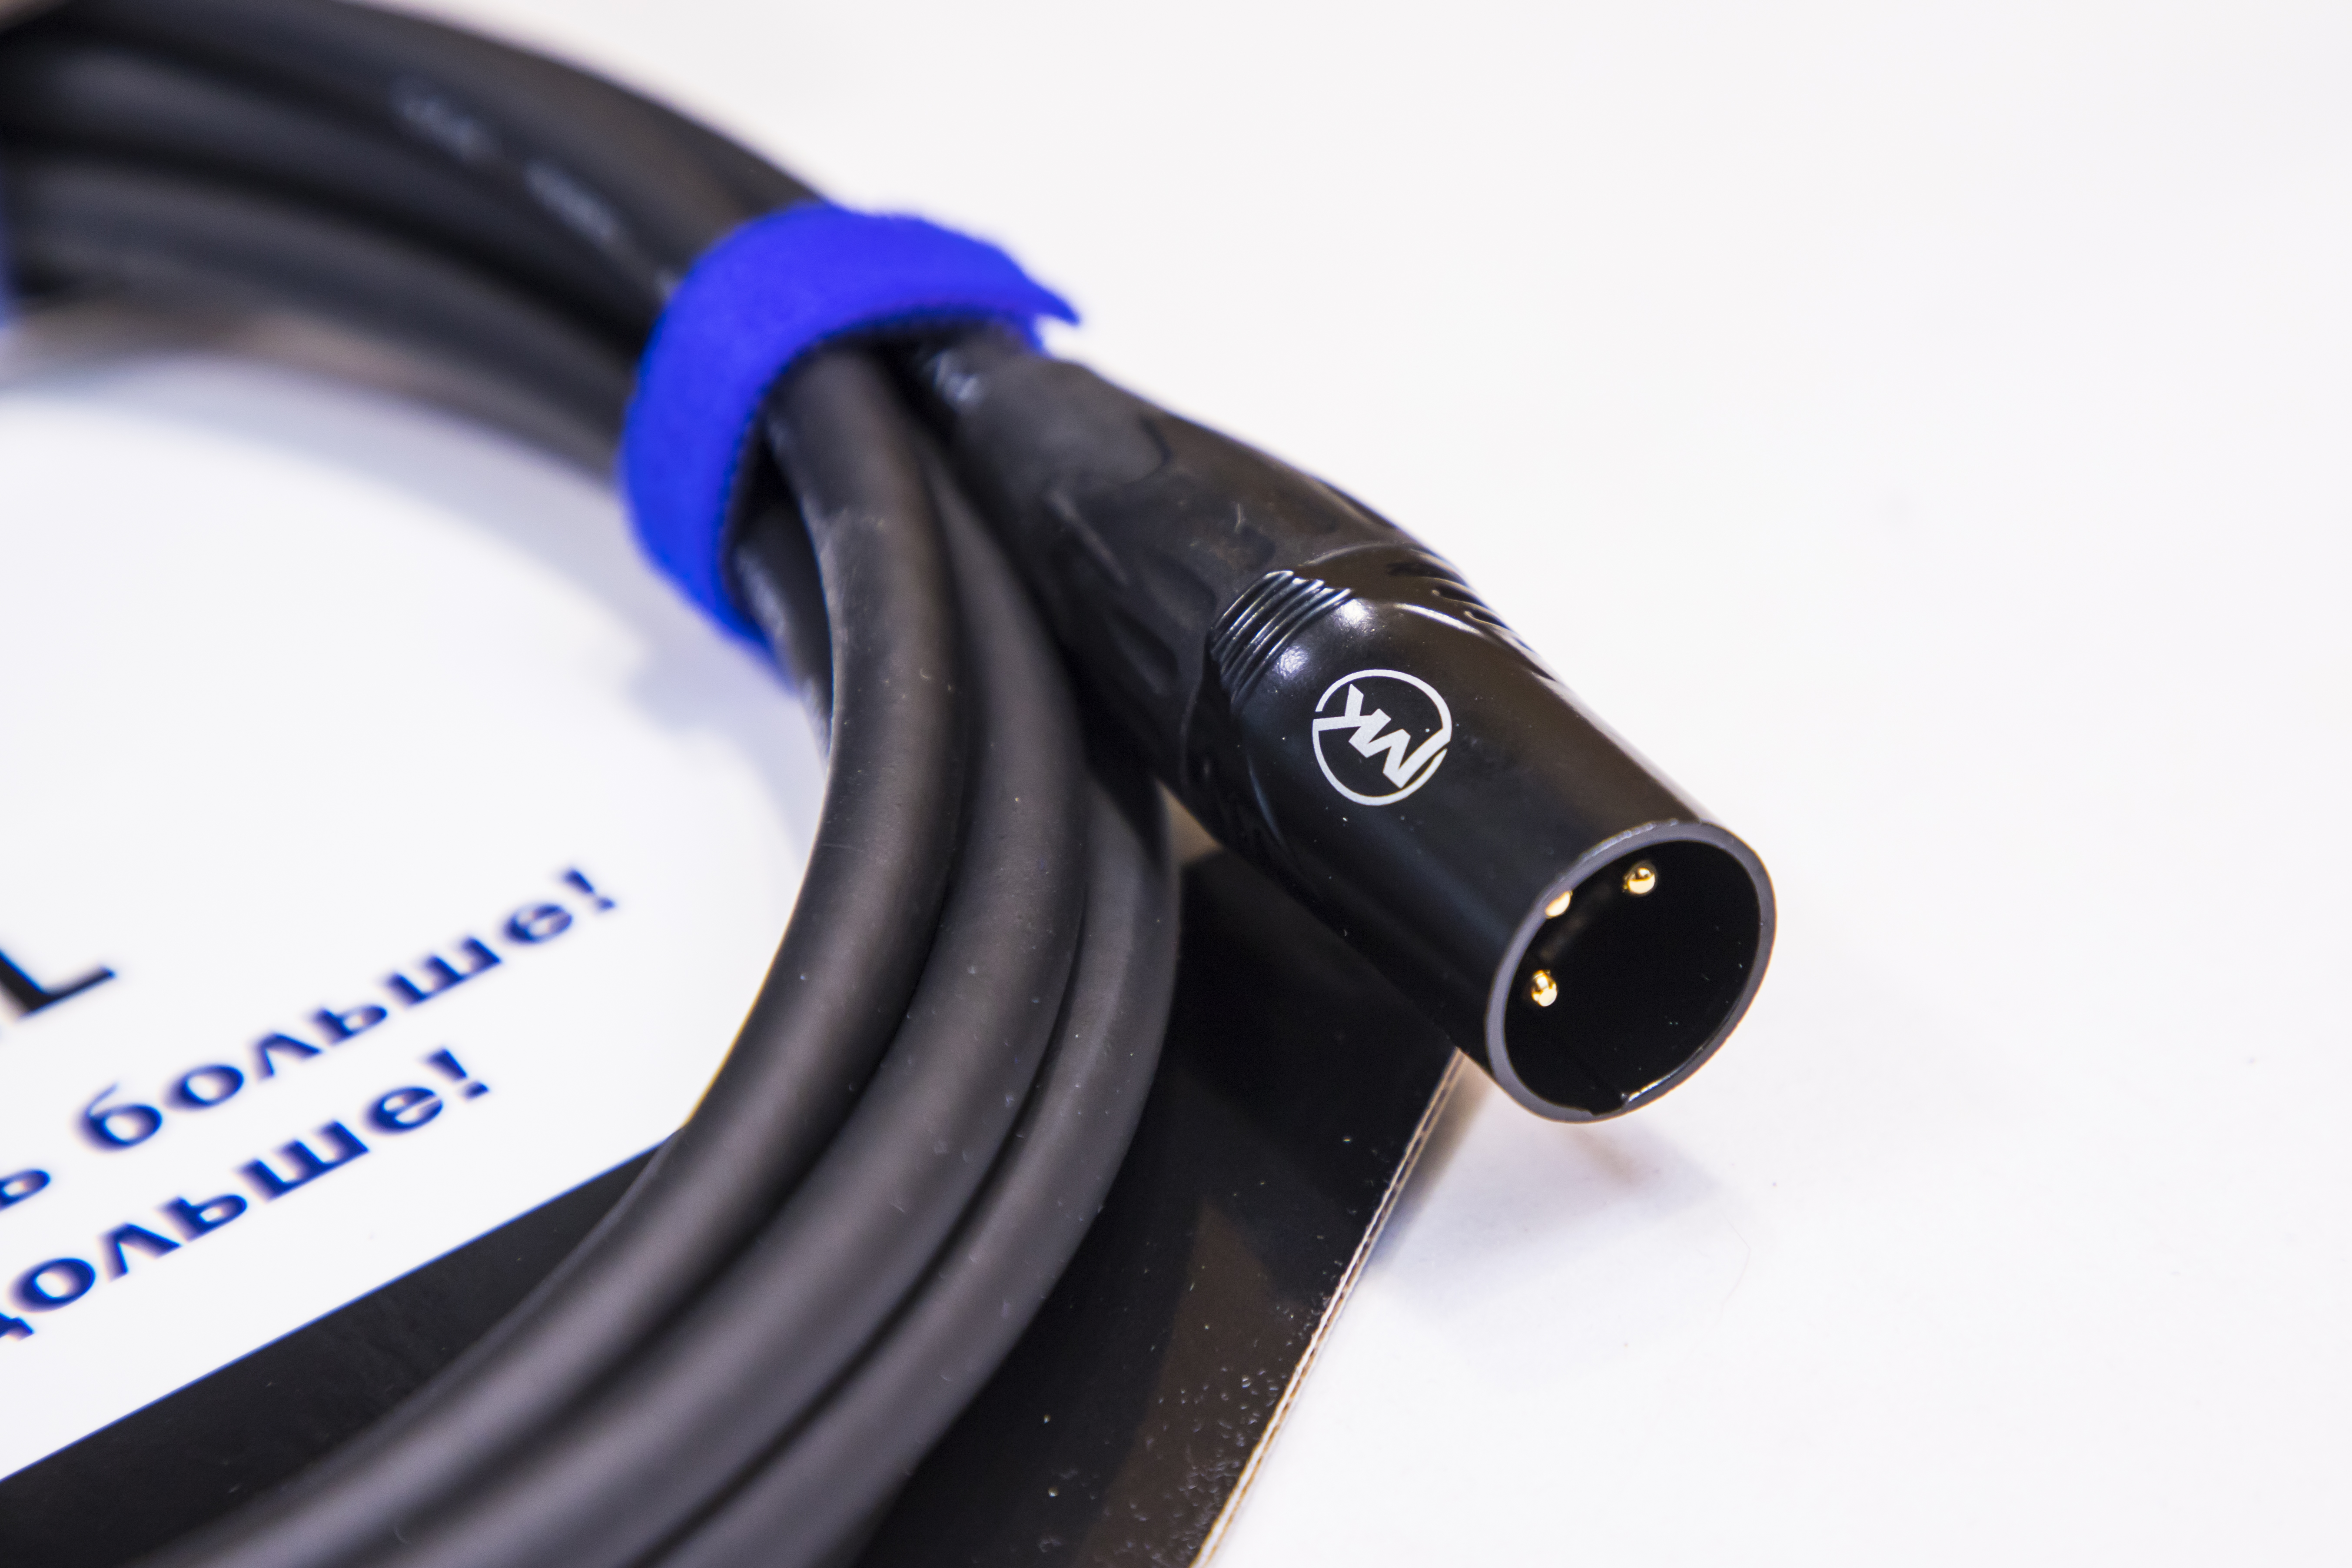 Микрофонный кабель MUZKABEL XXFMK1B - 8 метров, XLR – XLR